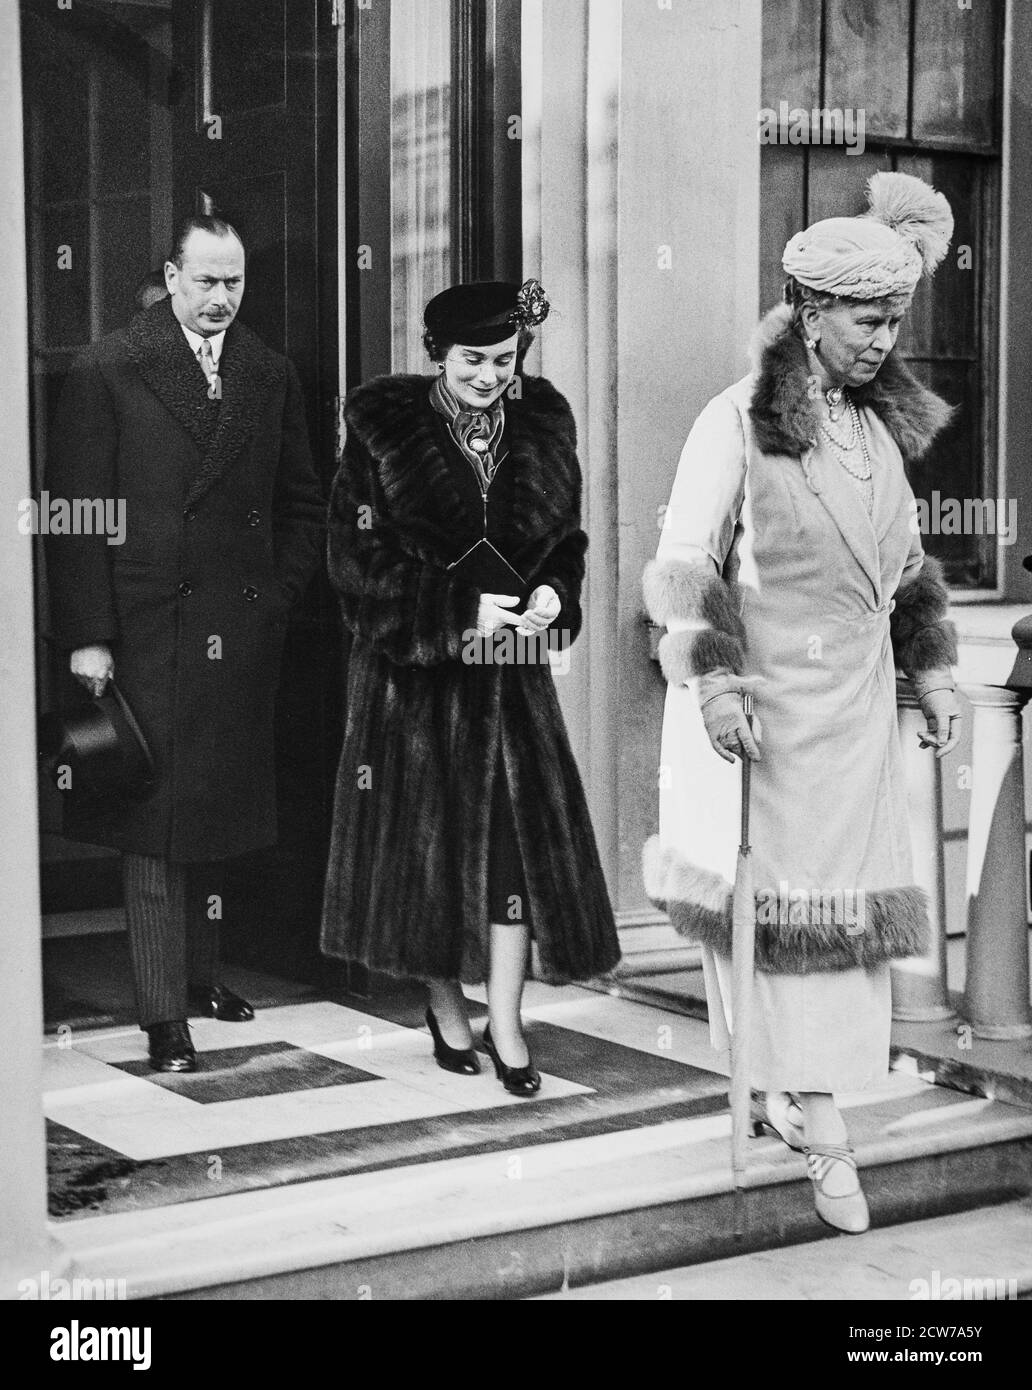 LONDRES - 9 DE FEBRERO: El duque de Gloucester, la duquesa de Gloucester y la reina María, que lave 3 Belgrave Square, para ir al bautizo de la princesa Alexandra en el Palacio de Buckingham, el 9 de febrero de 1937. Foto de stock